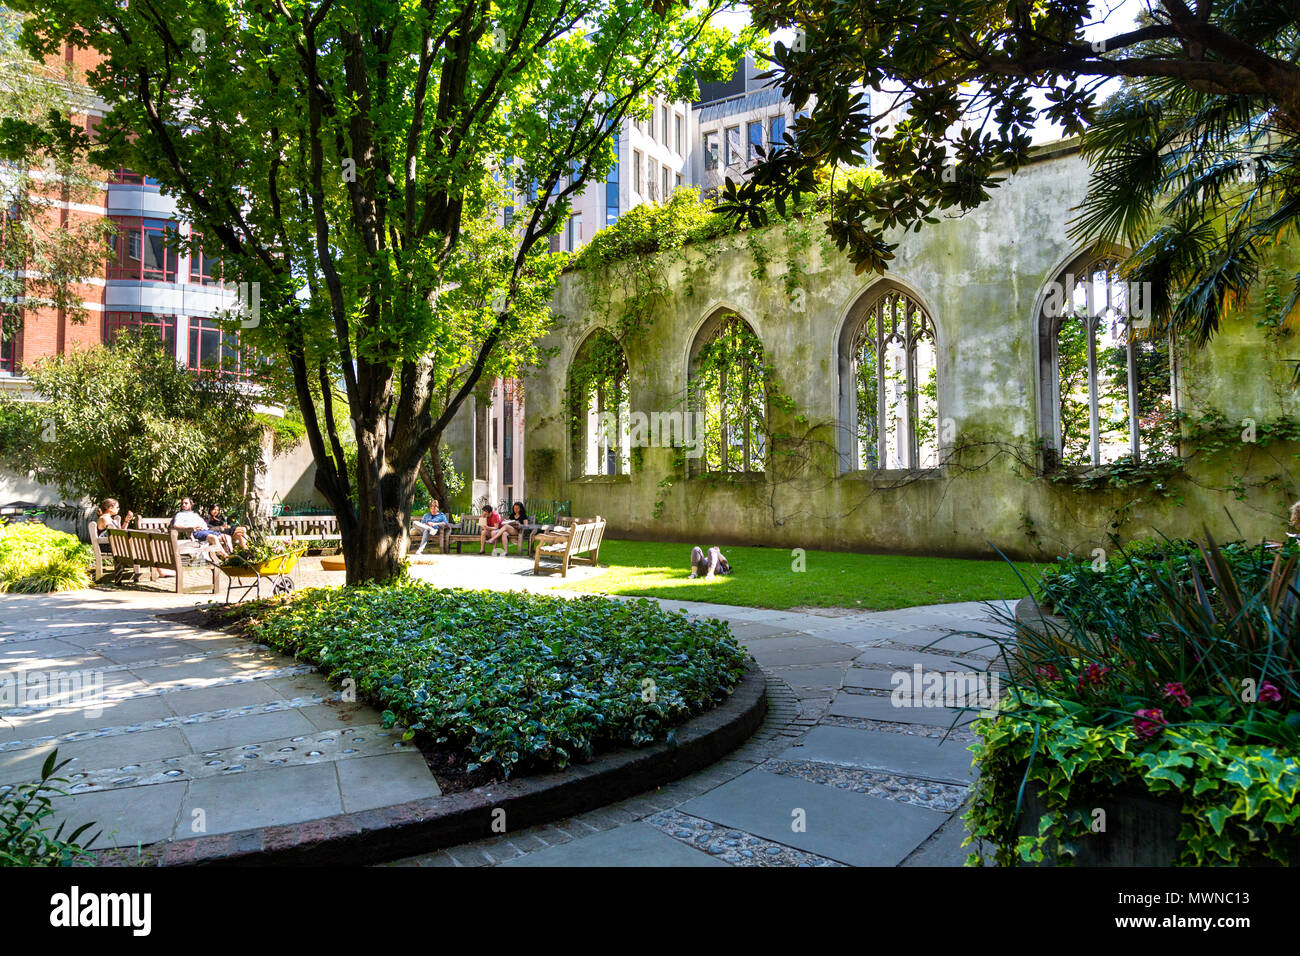 St Dunstan dans l'église est endommagé dans le blitz, maintenant transformé en un jardin public, Londres, UK Banque D'Images